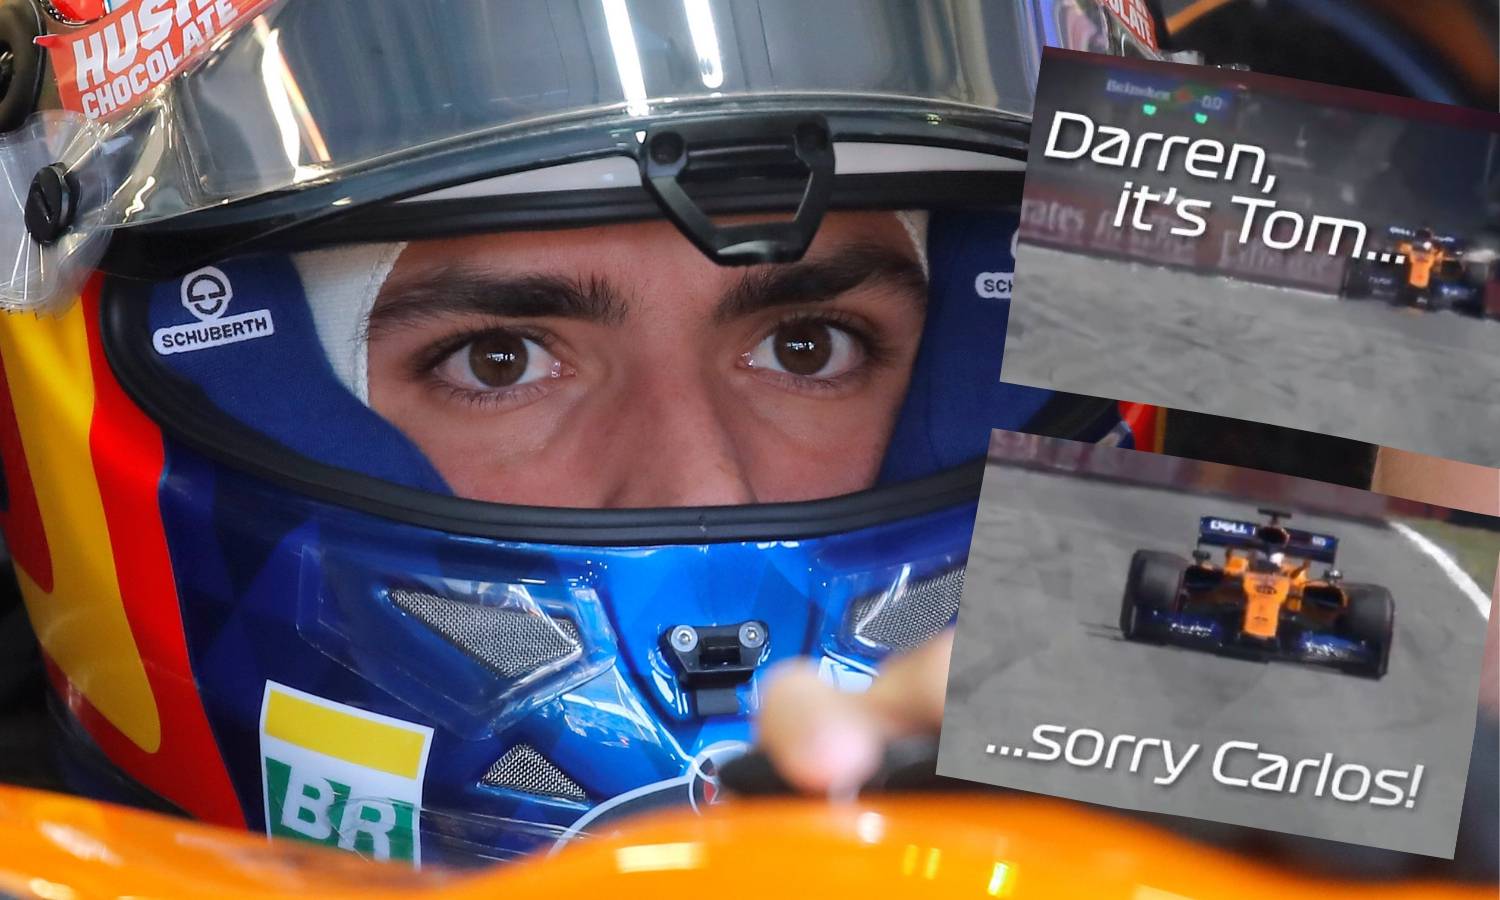 Ups! McLarenov boks ne zna ni ime svog vozača: Hej, Darren...